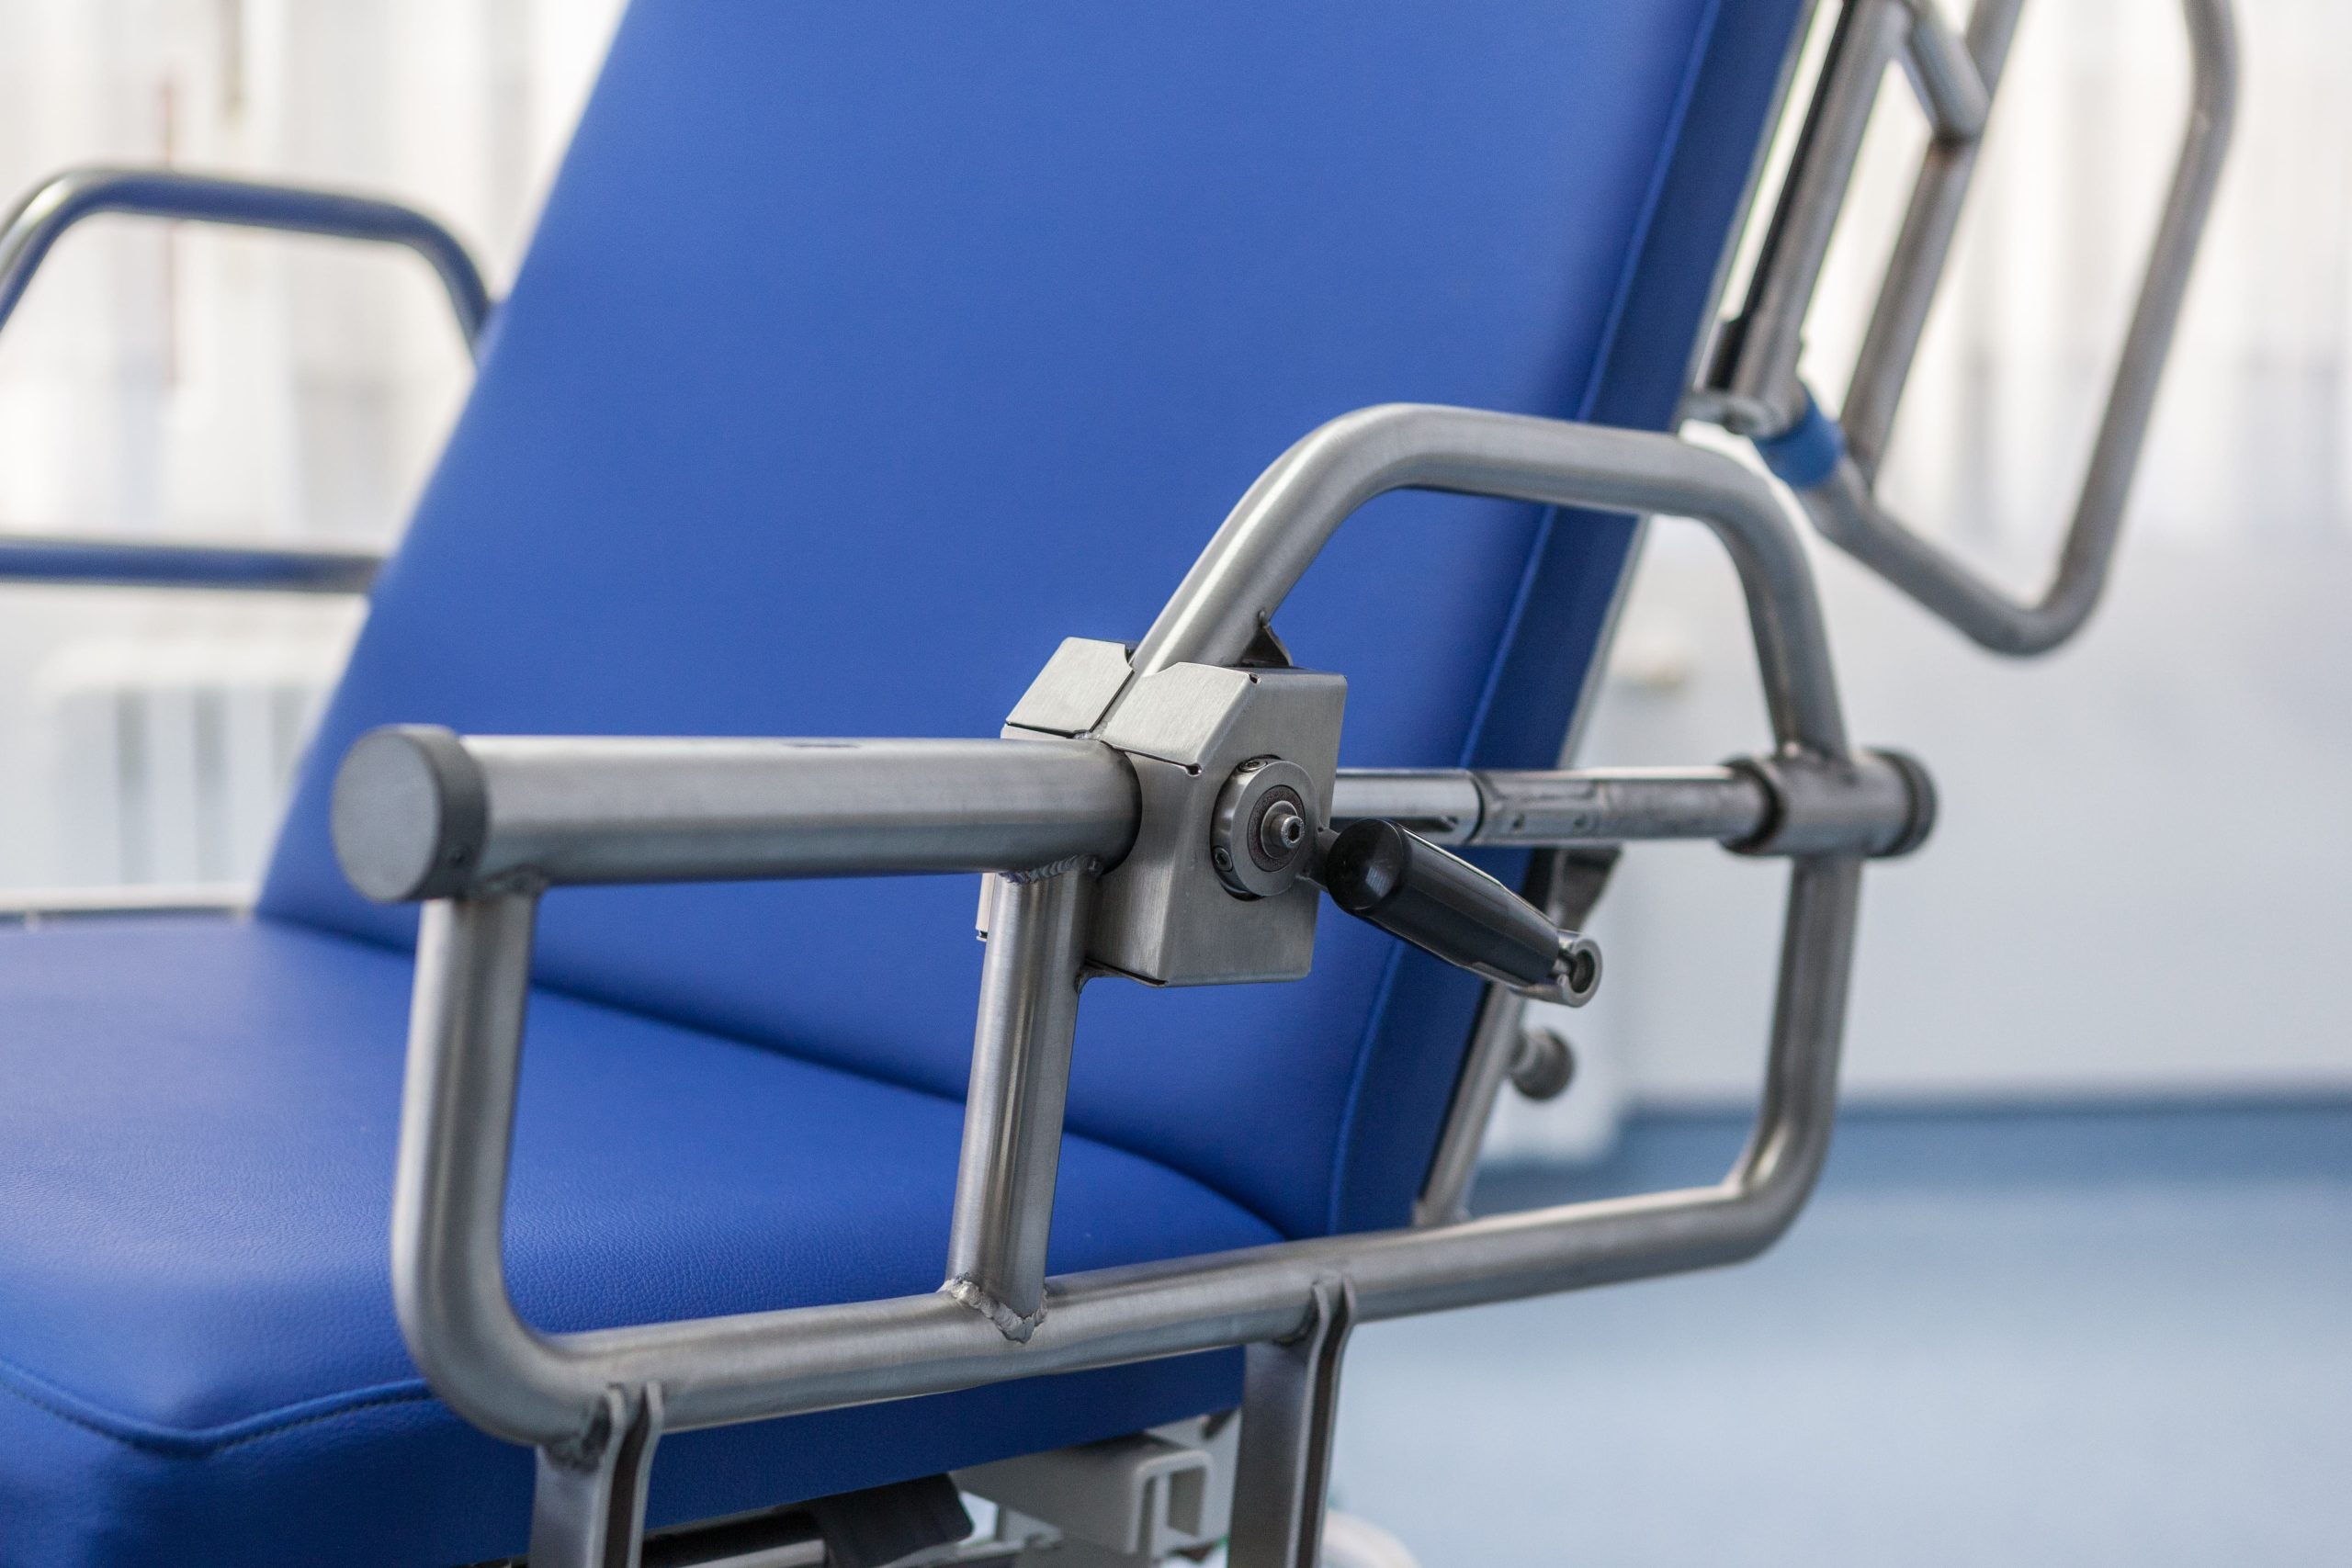 Plano detalle de la silla-camilla Leonardo, producto destinado para el tratamiento y manejo de pacientes